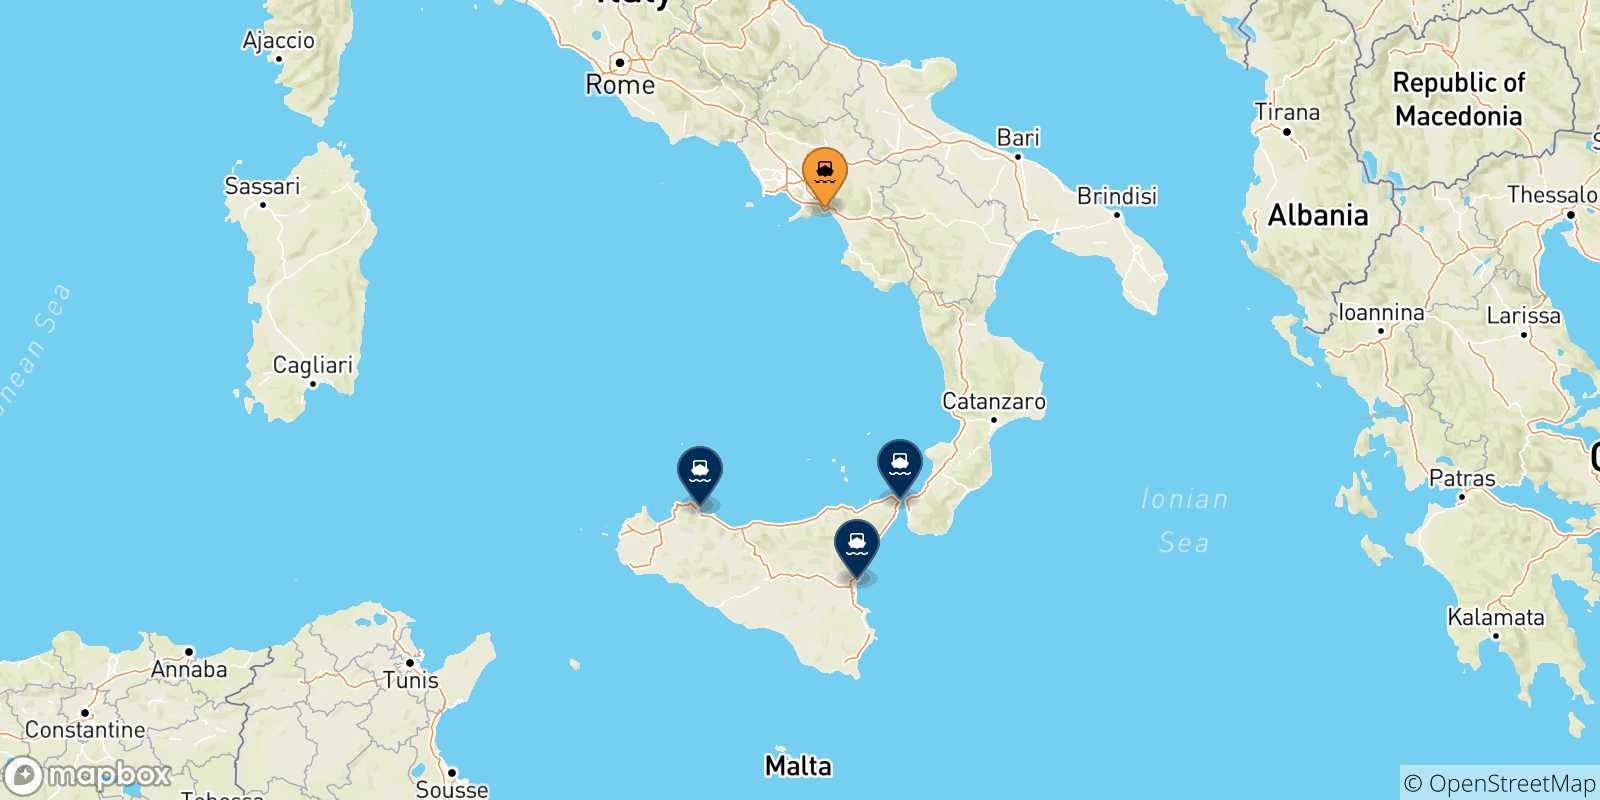 Mappa delle possibili rotte tra Salerno e l'Italia